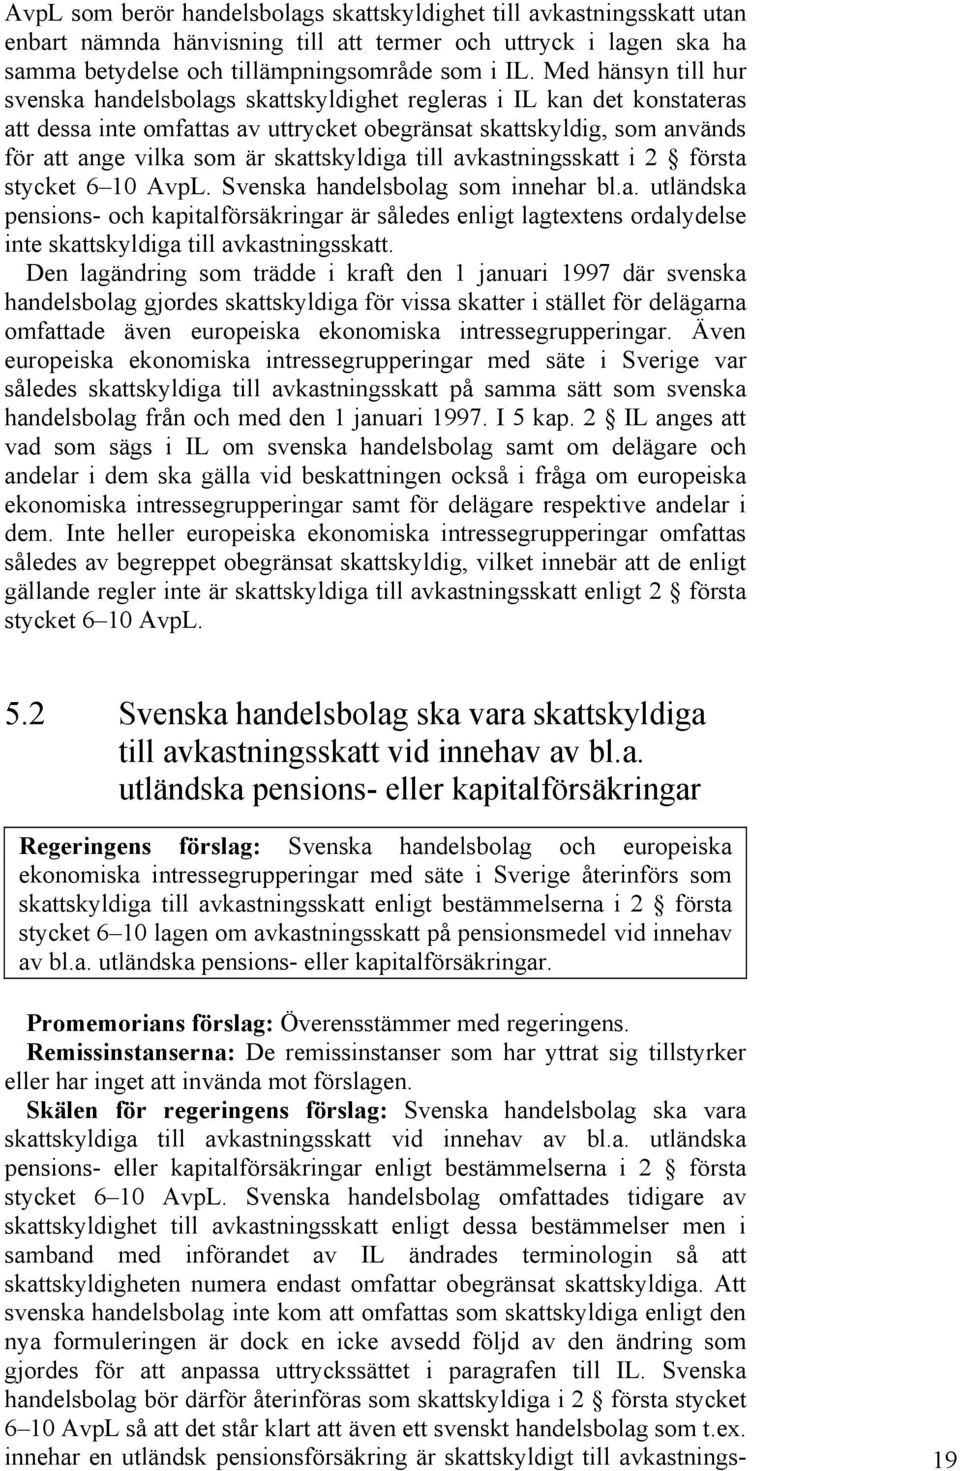 skattskyldiga till avkastningsskatt i 2 första stycket 6 10 AvpL. Svenska handelsbolag som innehar bl.a. utländska pensions- och kapitalförsäkringar är således enligt lagtextens ordalydelse inte skattskyldiga till avkastningsskatt.